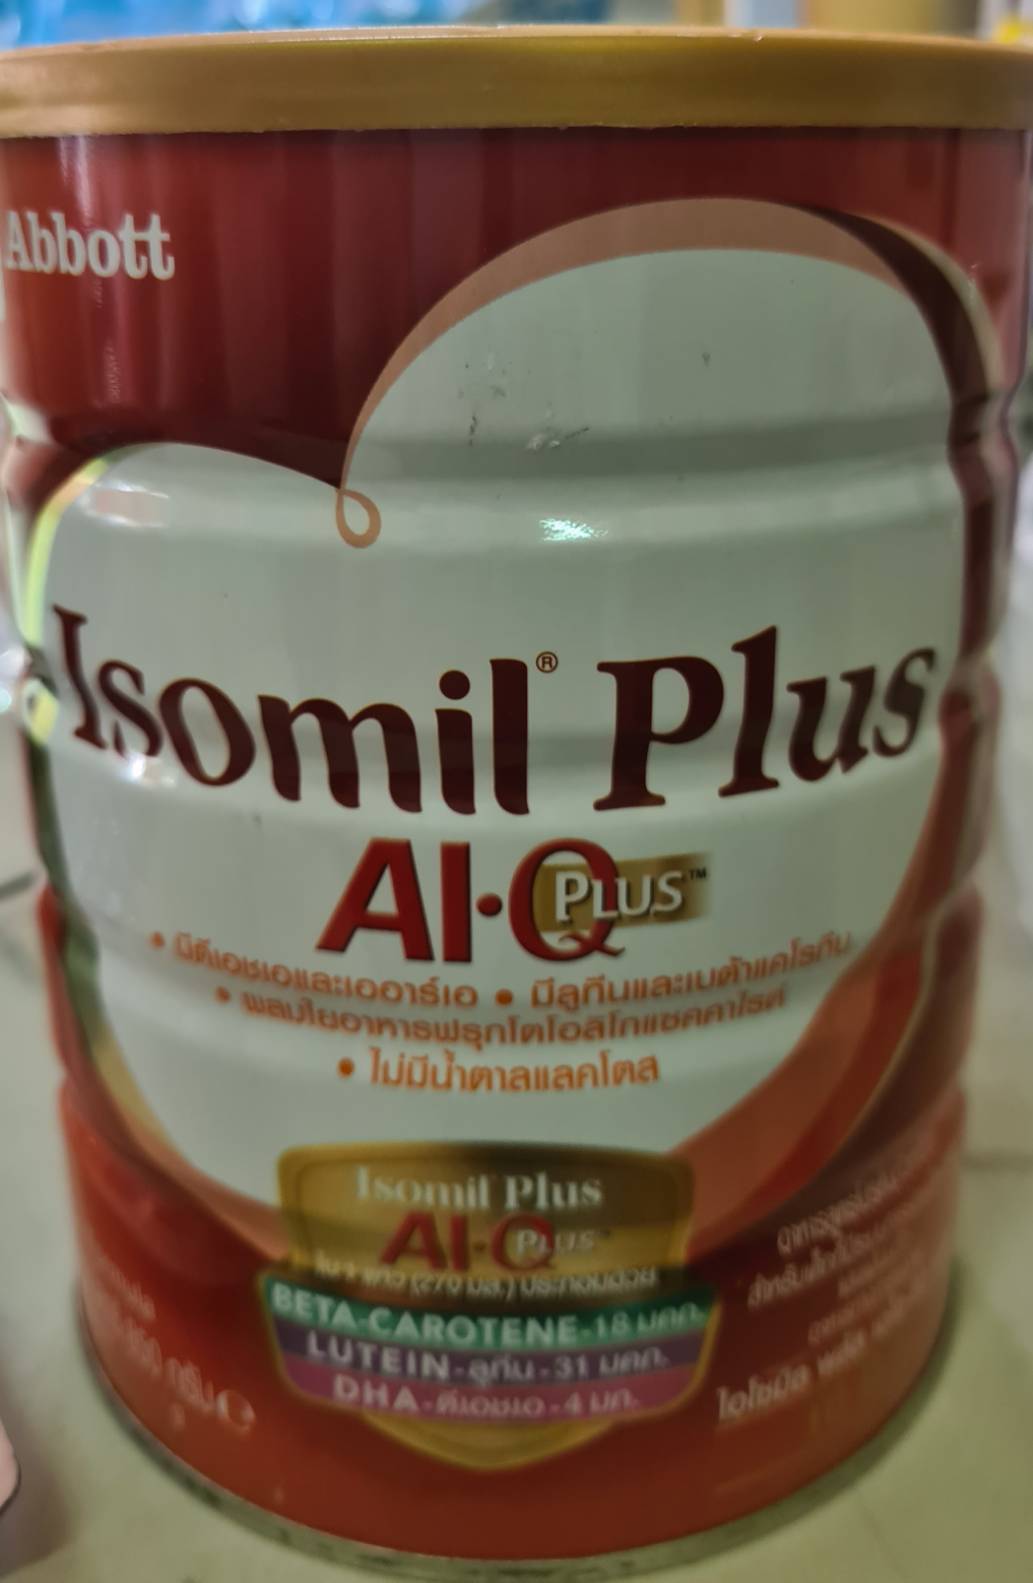 Isomil Plus AI Q Plus ไอโซมิลพลัส นมผงเด็ก 1 ปีขึ้นไป